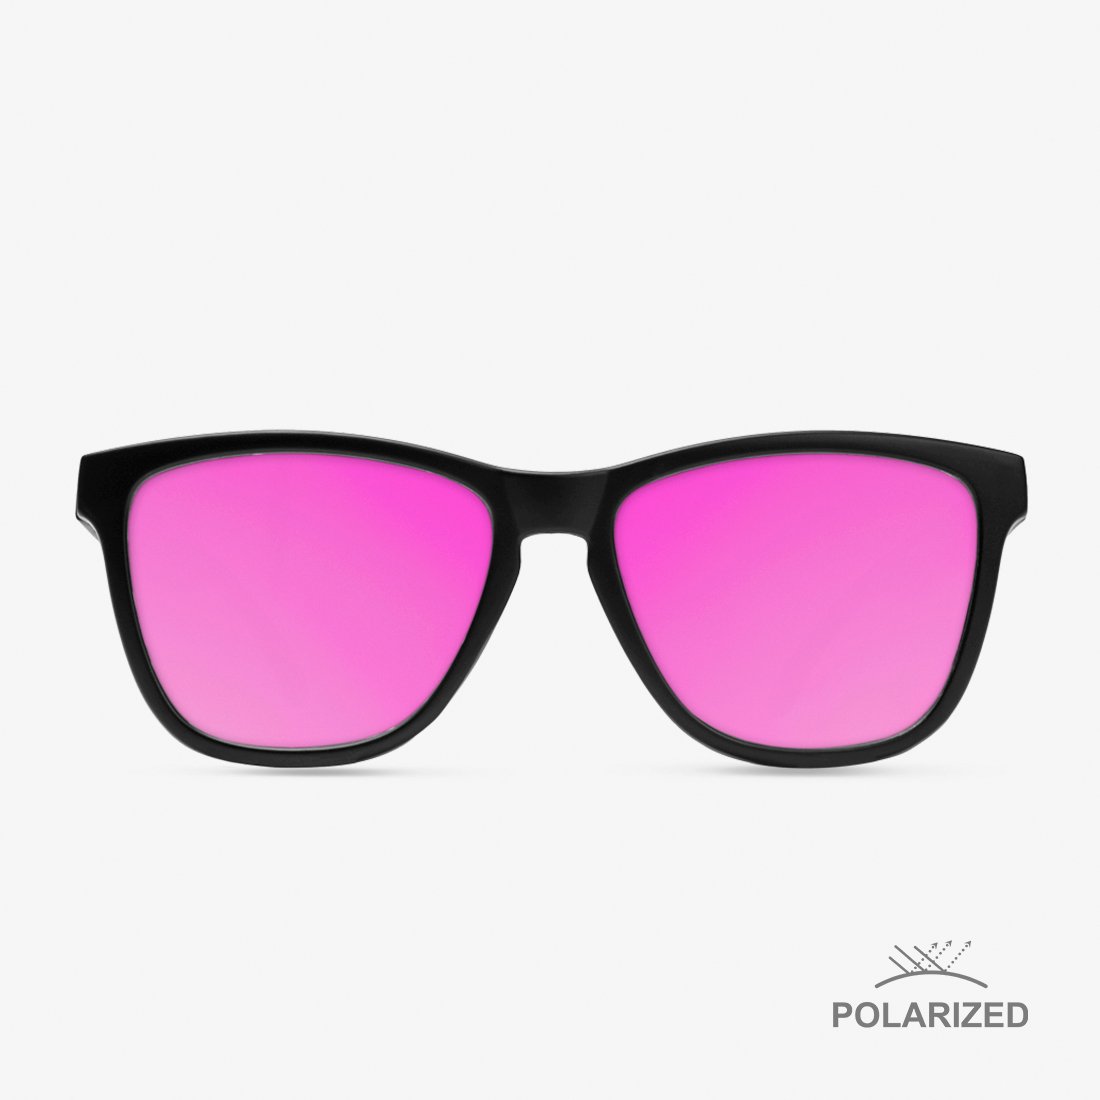 Roosevelt Black Matte / Pink Polarized